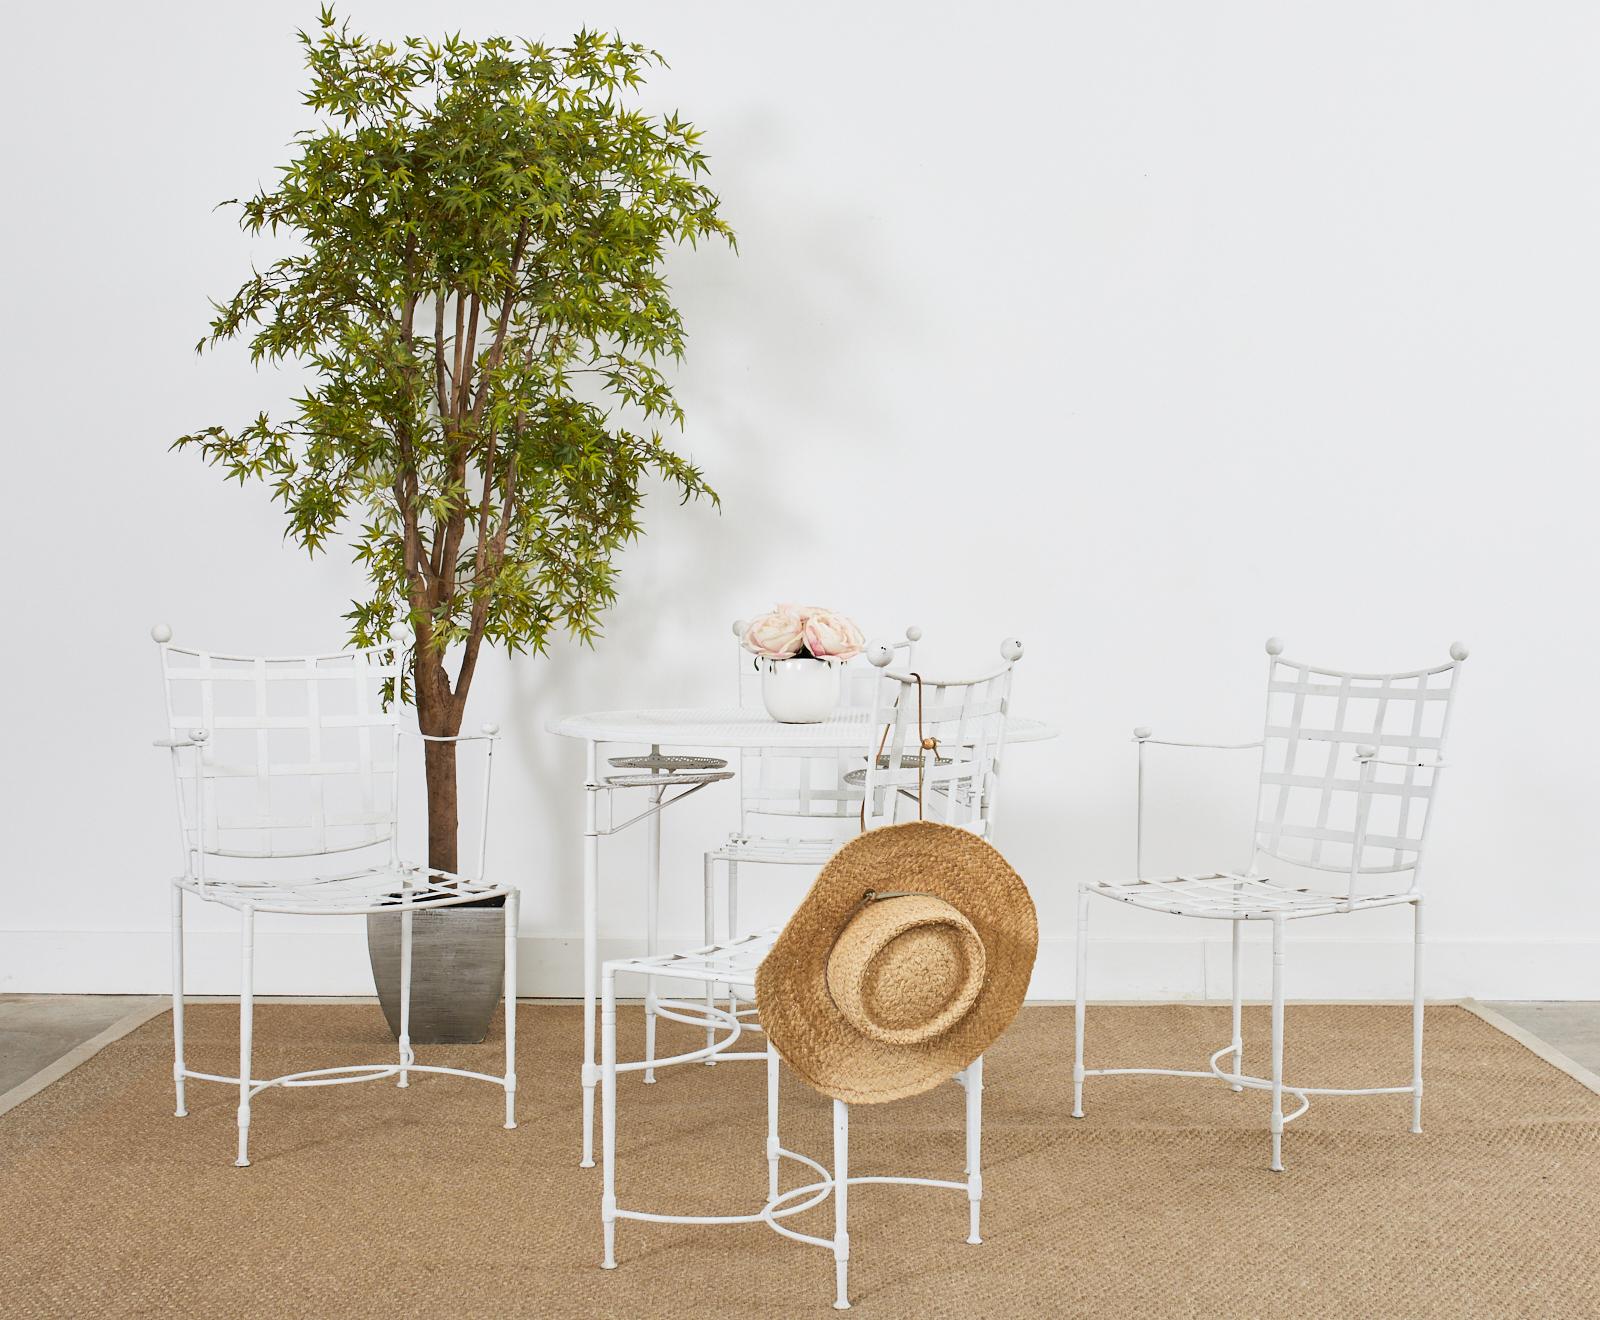 Ikonisches Mid-Century Modern Set mit vier Stühlen für Terrasse und Garten, entworfen von Mario Papperzini für John Salterini. Das Set besteht aus zwei Beistellstühlen und zwei Host-Sesseln mit einer Breite von 22 Zoll und einer Tiefe von 20,5 Zoll.